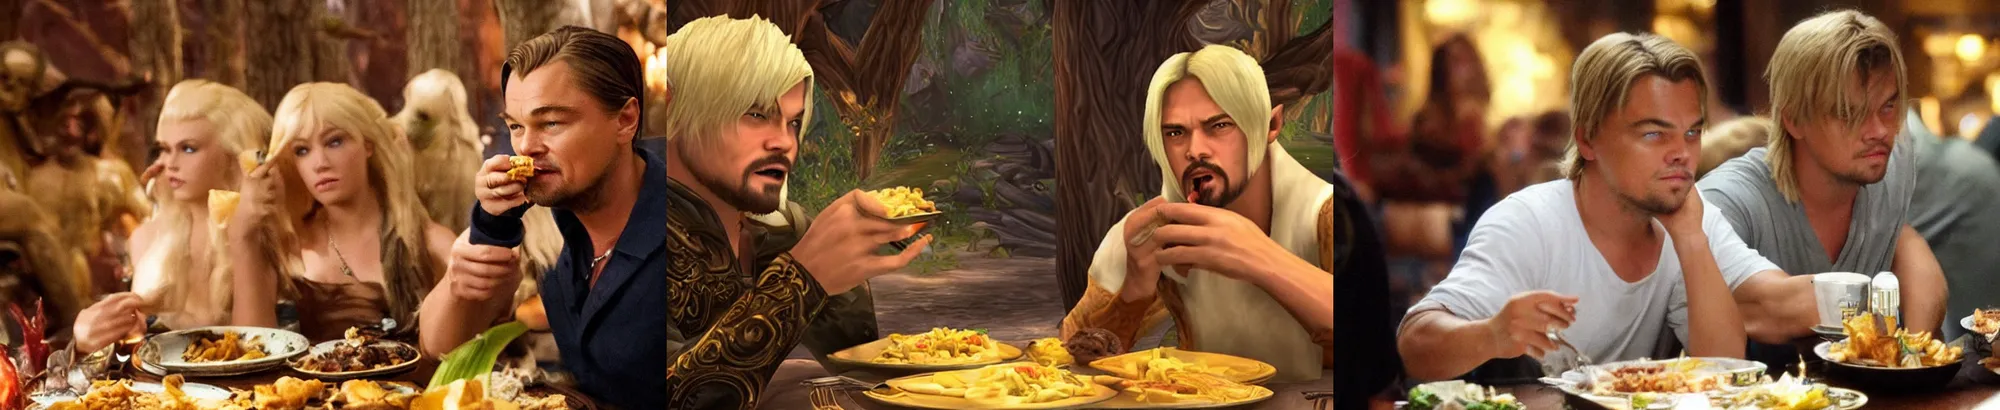 Prompt: leonardo dicaprio with blonde fringe eating food inside world of warcraft elwynn forest